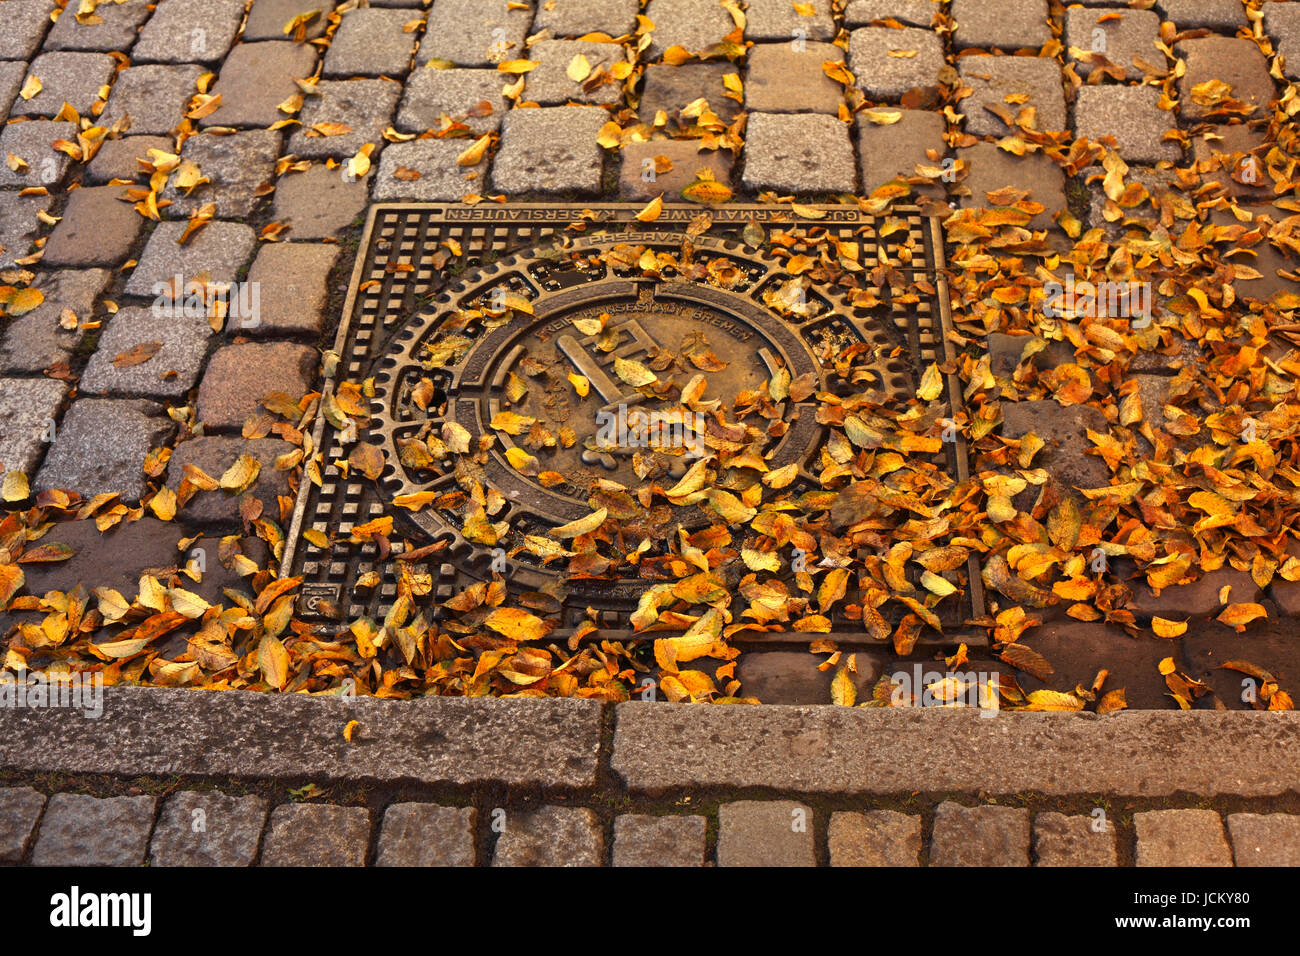 Bremer Schluessel auf Kanaldeckel mit gelben Herbstlaub und Bordstein, Bremen, Germany     I  Coat of arms on a Iron Manhole Cocer,Bremen key on canal Stock Photo